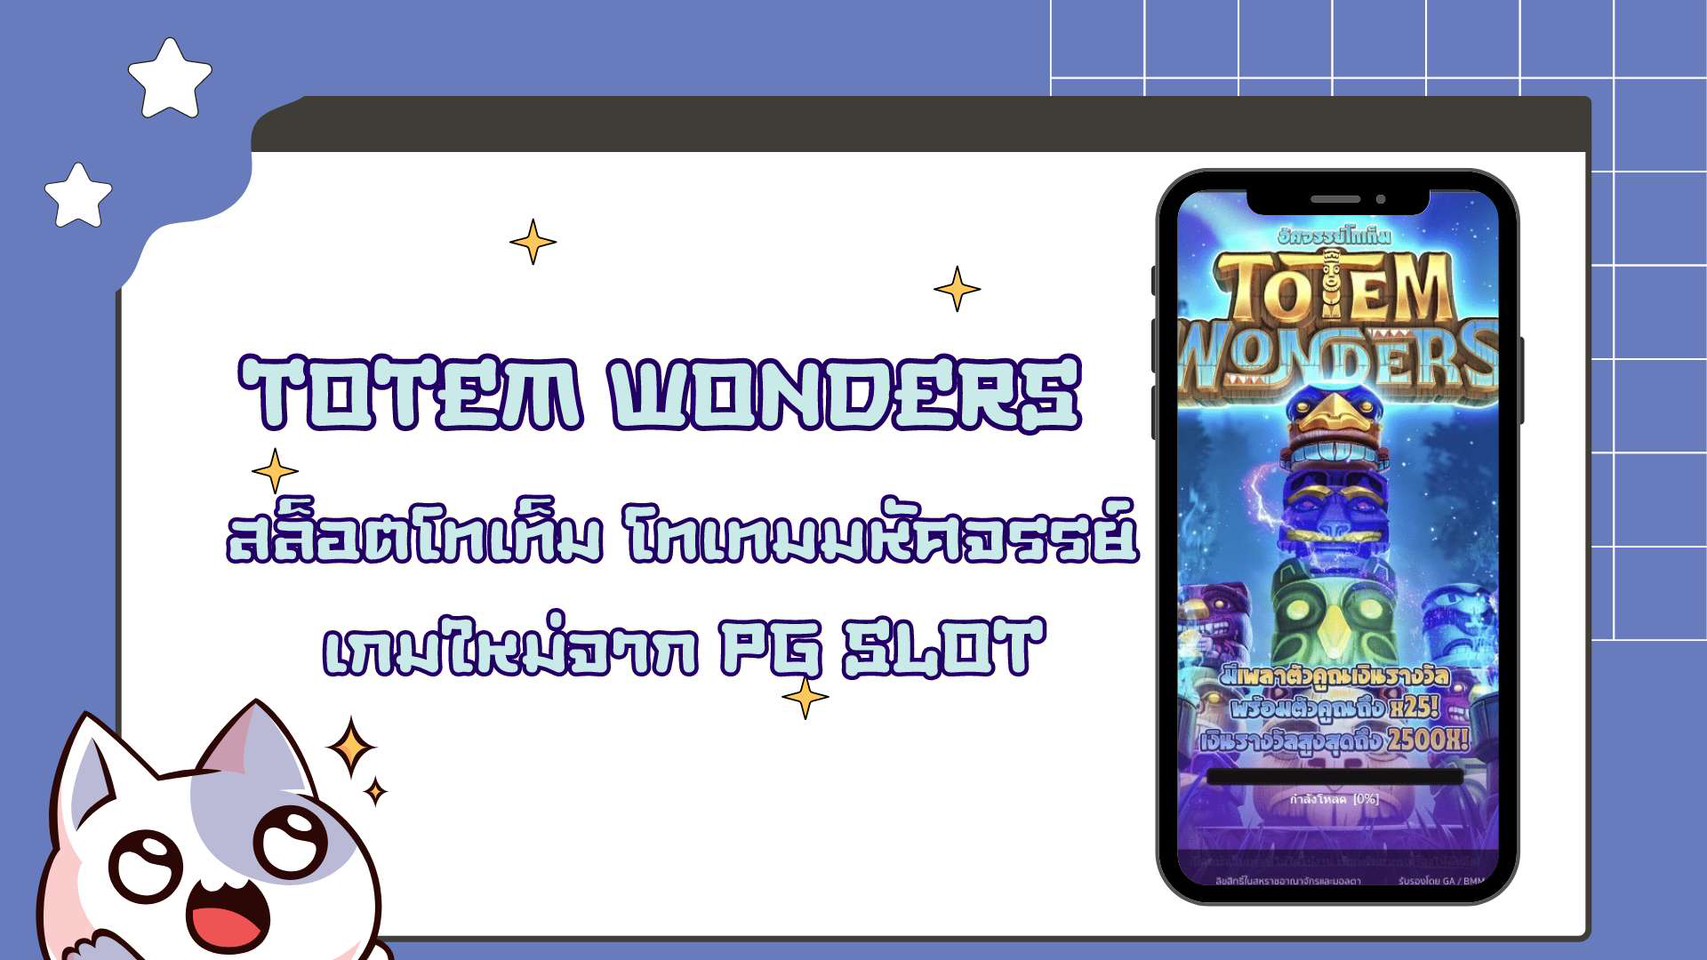 สล็อตออนไลน์ TOTEM  WONDER โทเทม มหัศจรรย์ เกมใหม่ค่าย PGSLOT